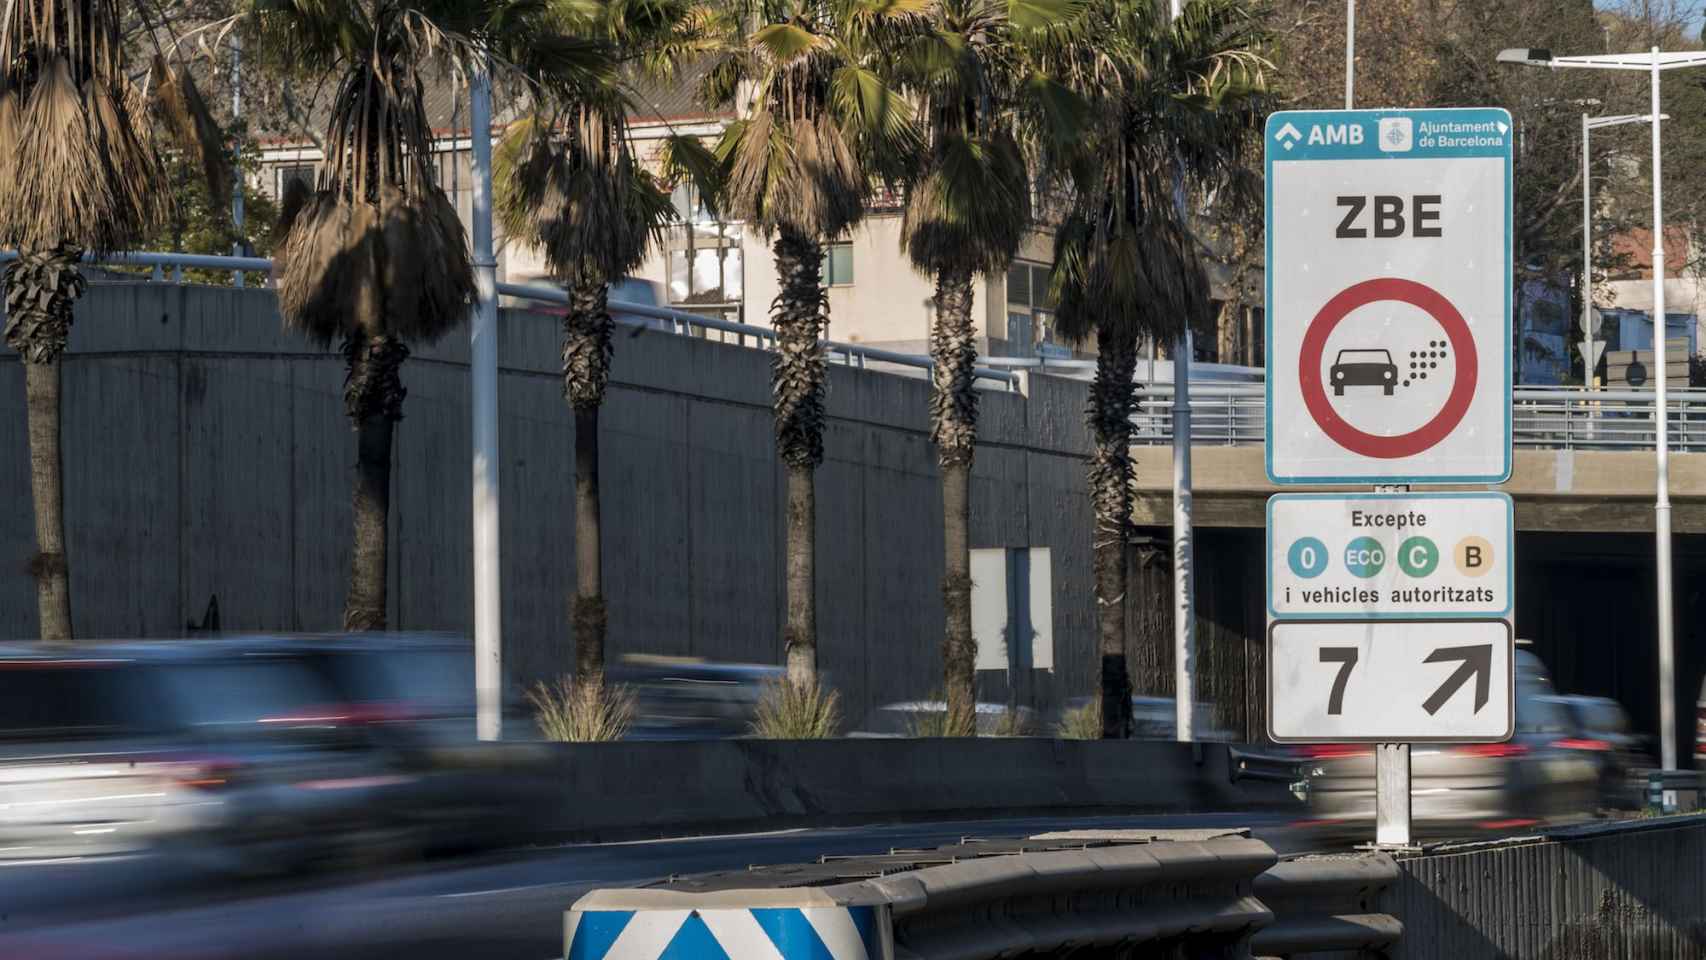 Señalización de la Zona de Bajas Emisiones en Barcelona / AYUNTAMIENTO DE BARCELONA